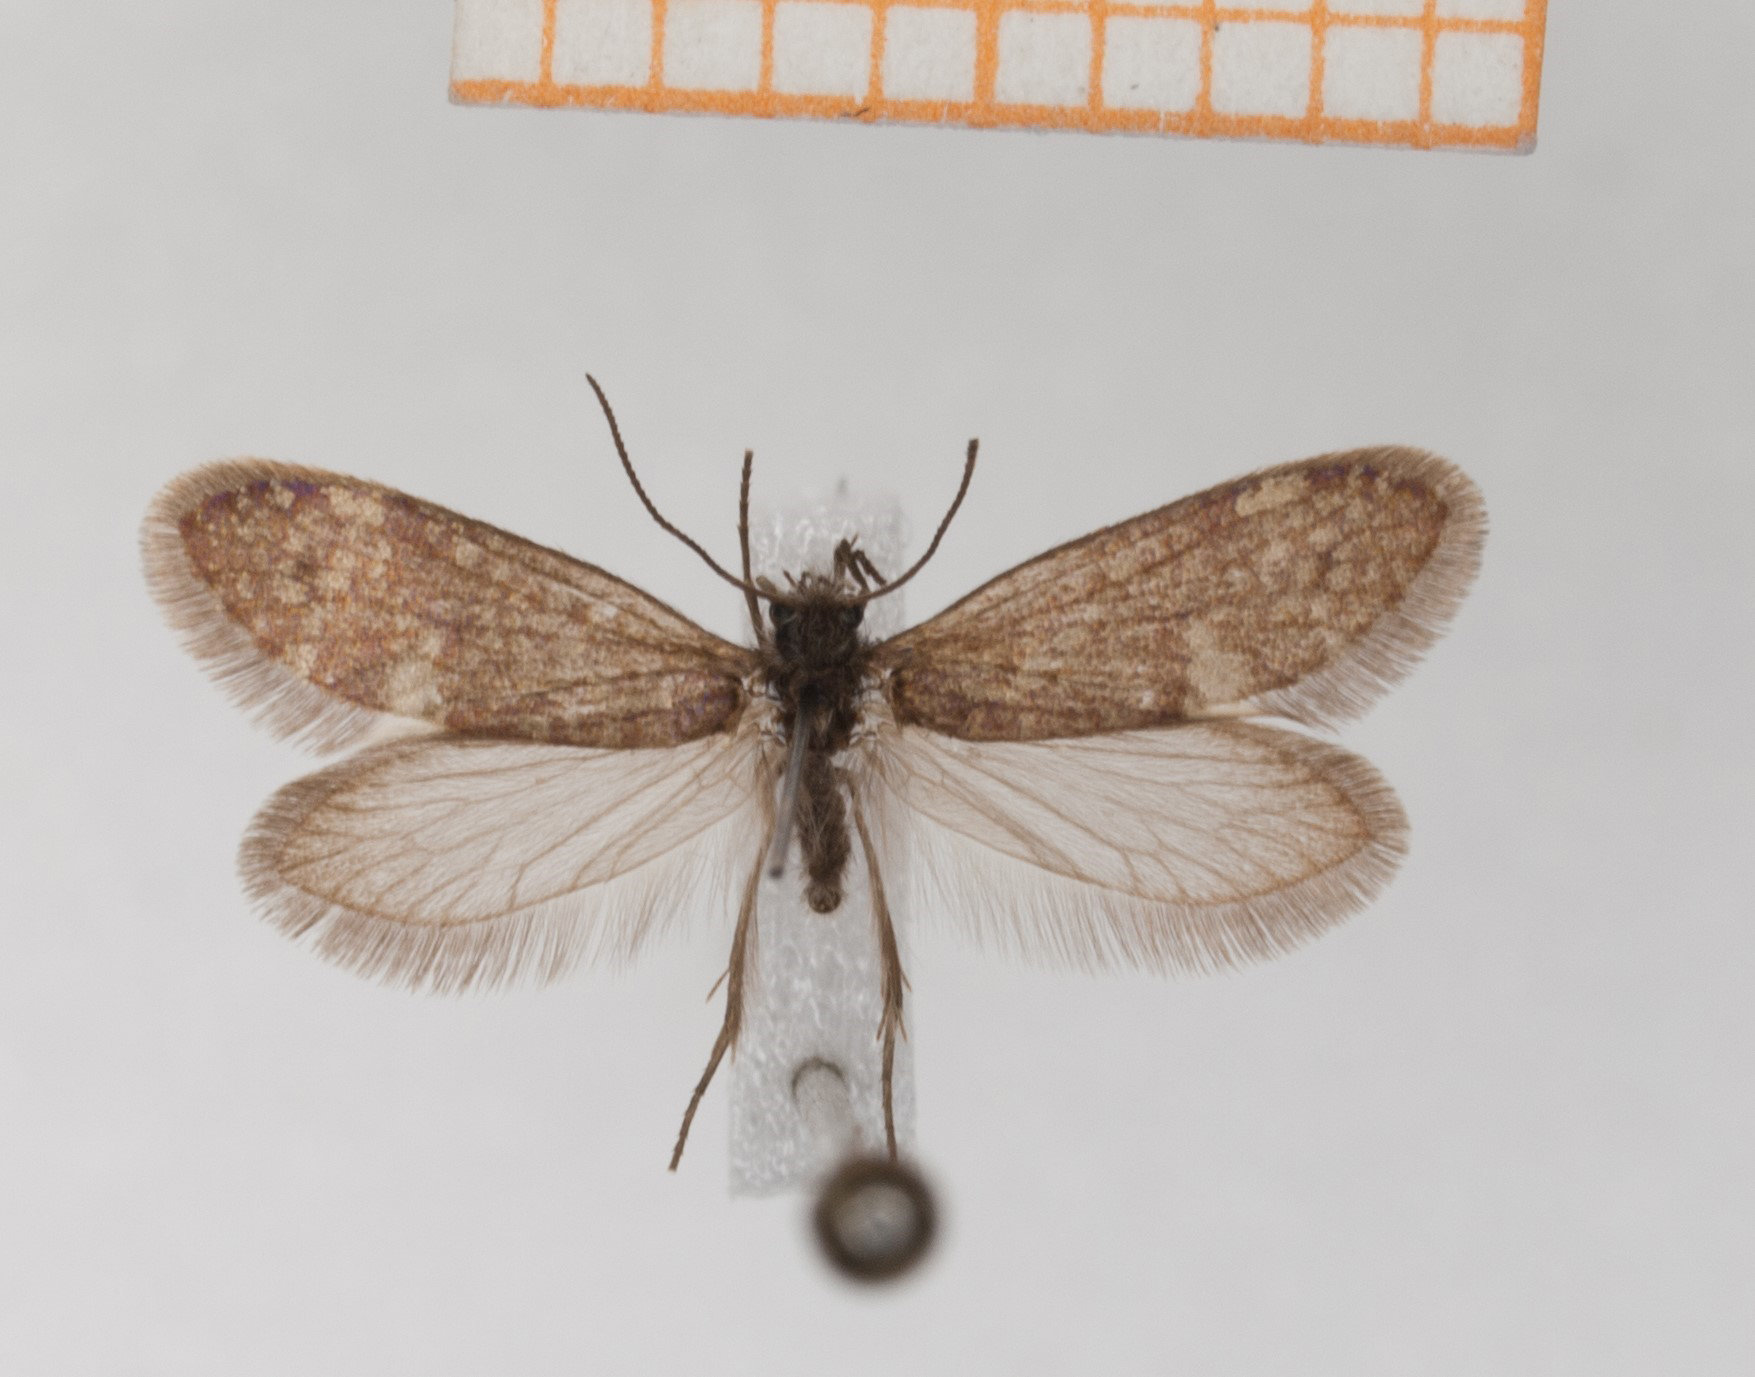 Typickým znakem motýlů (a můr) jsou dva páry vzdušnicemi protkaných křídel, která jsou pokryta drobnými šupinkami (squamulae). Šupinky pokrývají hustě rub i líc křídel a překrývají se jako tašky na střeše. Kredit: Hossein Rajaei